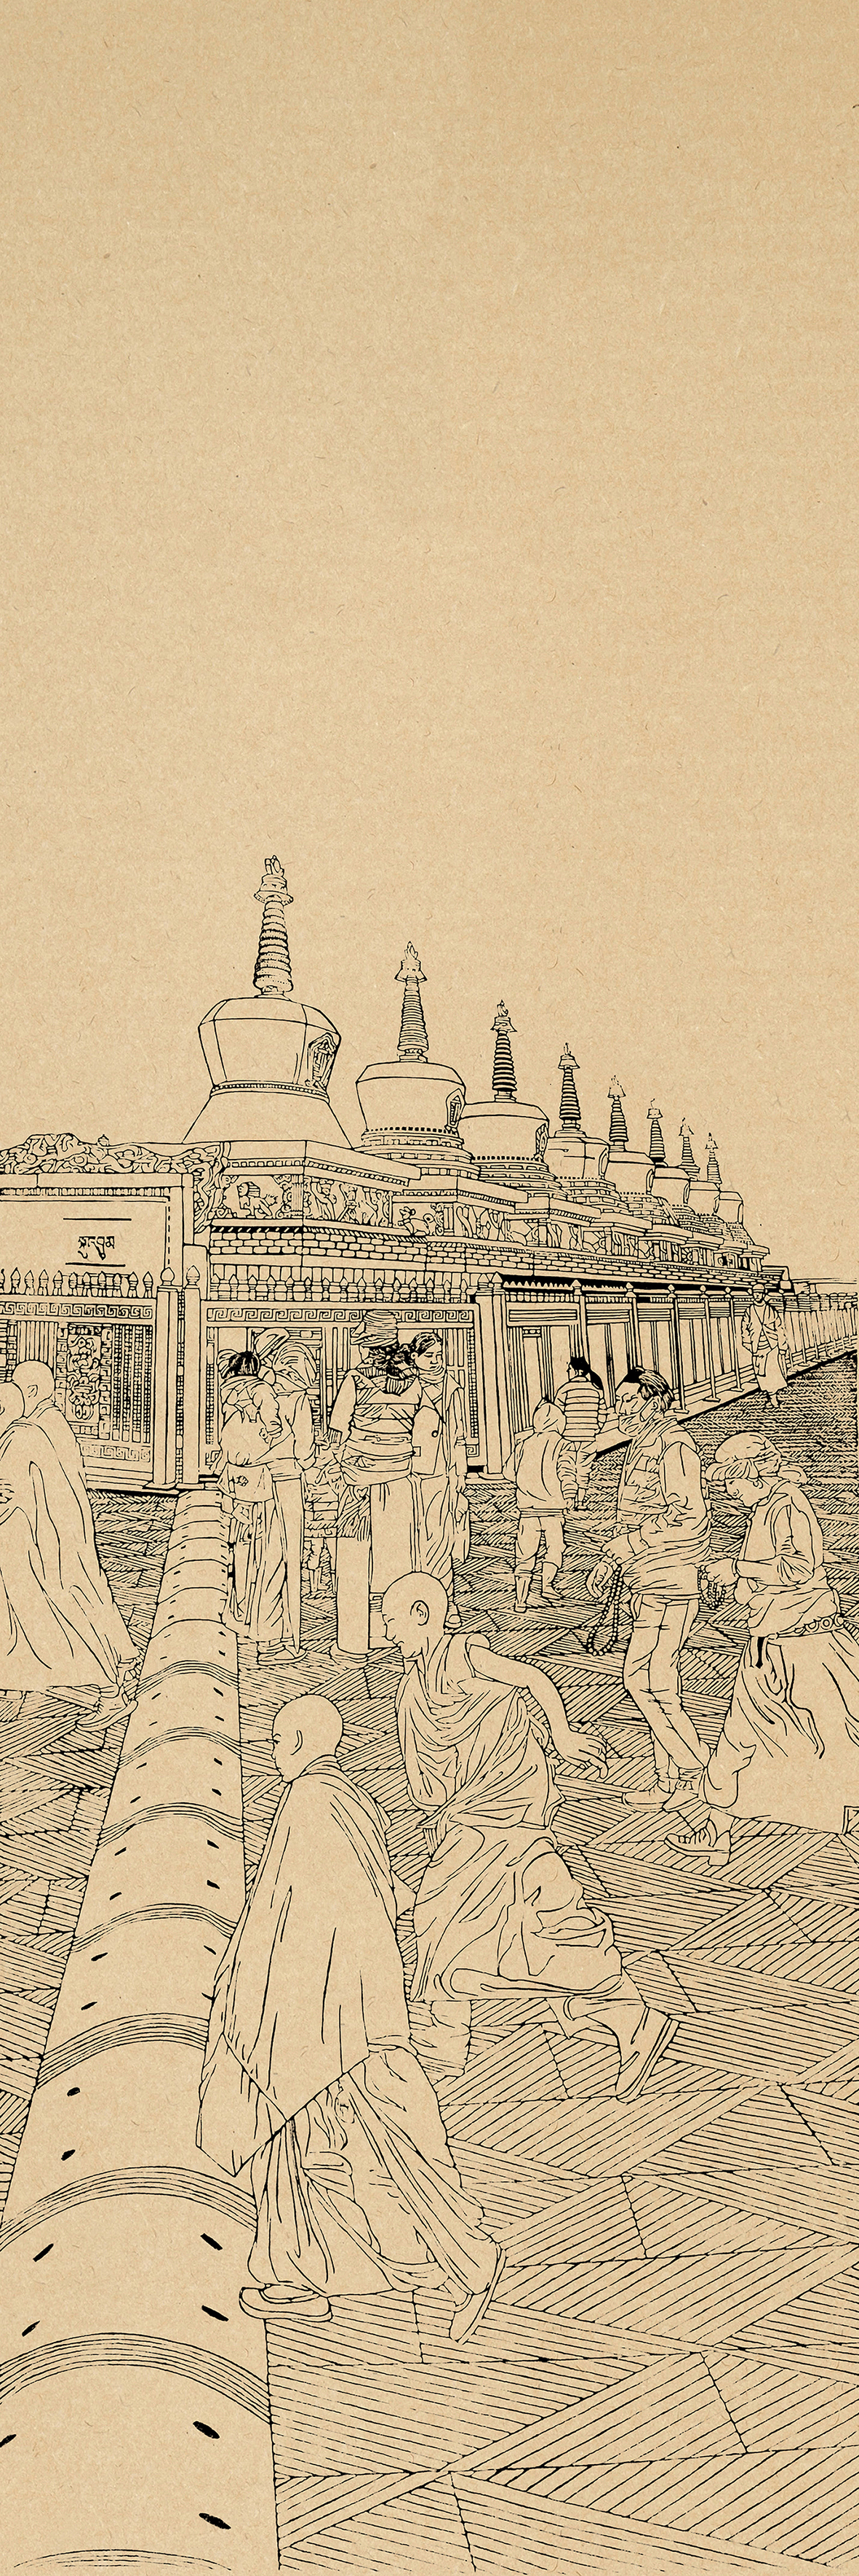 丝绸之路系列版画——塔尔寺